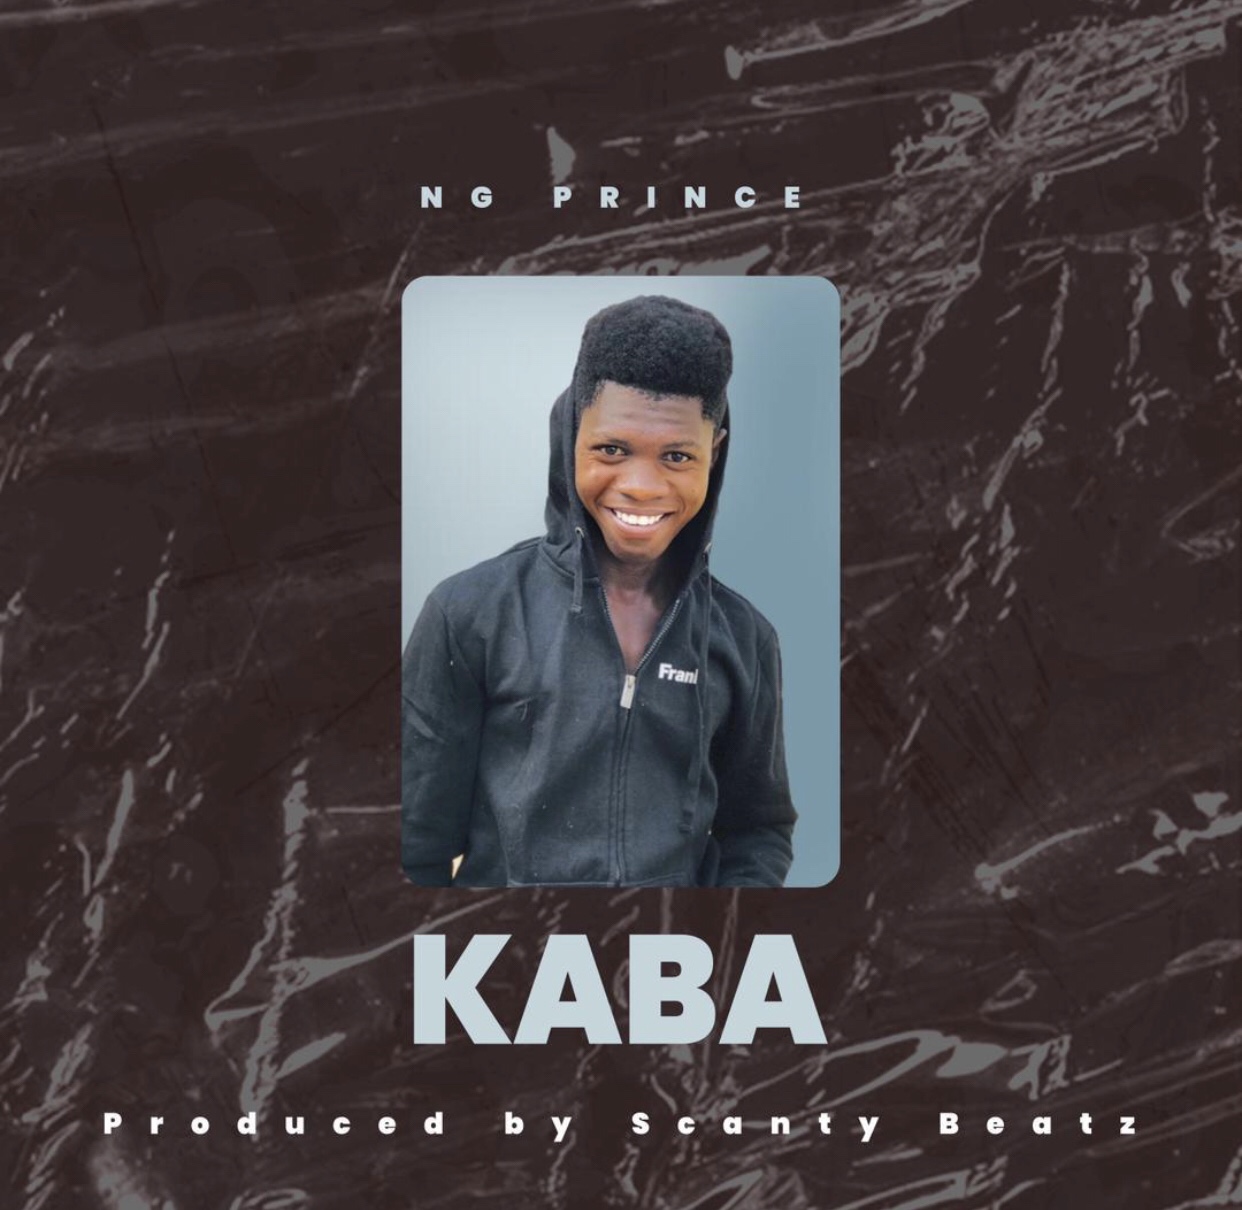 NG Prince - Kaba